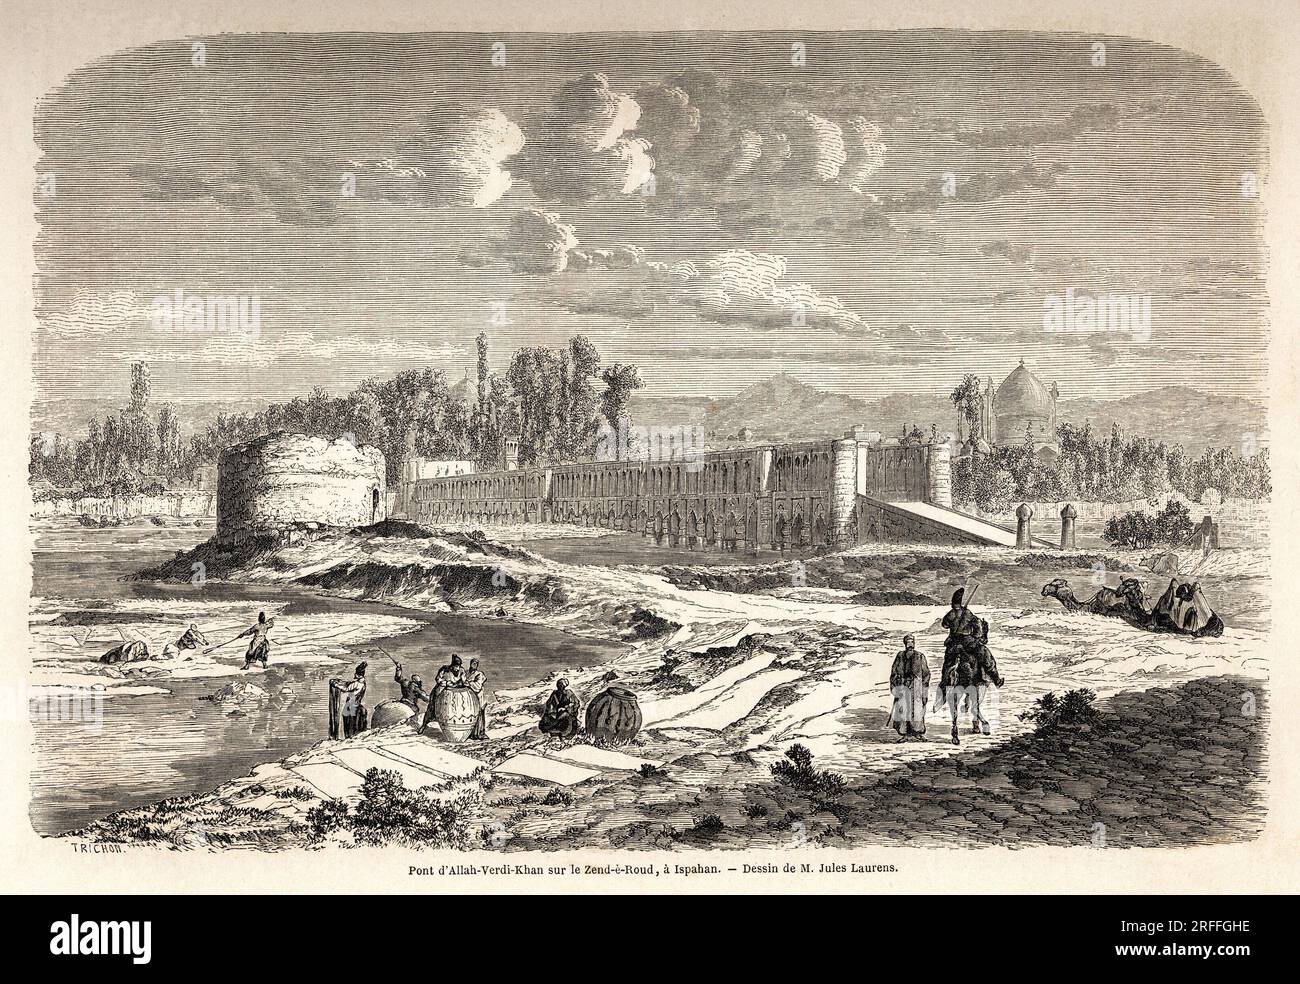 Le pont Allah Verdi Kahn, erige vers 1608, a Ispahan (ou Isfahan) (Iran), a la fois lieu de Passage pour traverser la riviere Zend e Roud, mais aussi barge pour reguler le cours de la riviere, avec un Talar, ou kiosque des miroirs, Oder le Souverain perse pouvait Observer la riviere. Dessin de Jules Laurens (1825-1901), pour Illustrator le voyage en Perse, de 1855 a 1858, d'Arthur Gobineau (1816-1882). Gravure in „Le Tour du Monde, Nouveau Journal des Voyages“ Paris, 1860. Stockfoto